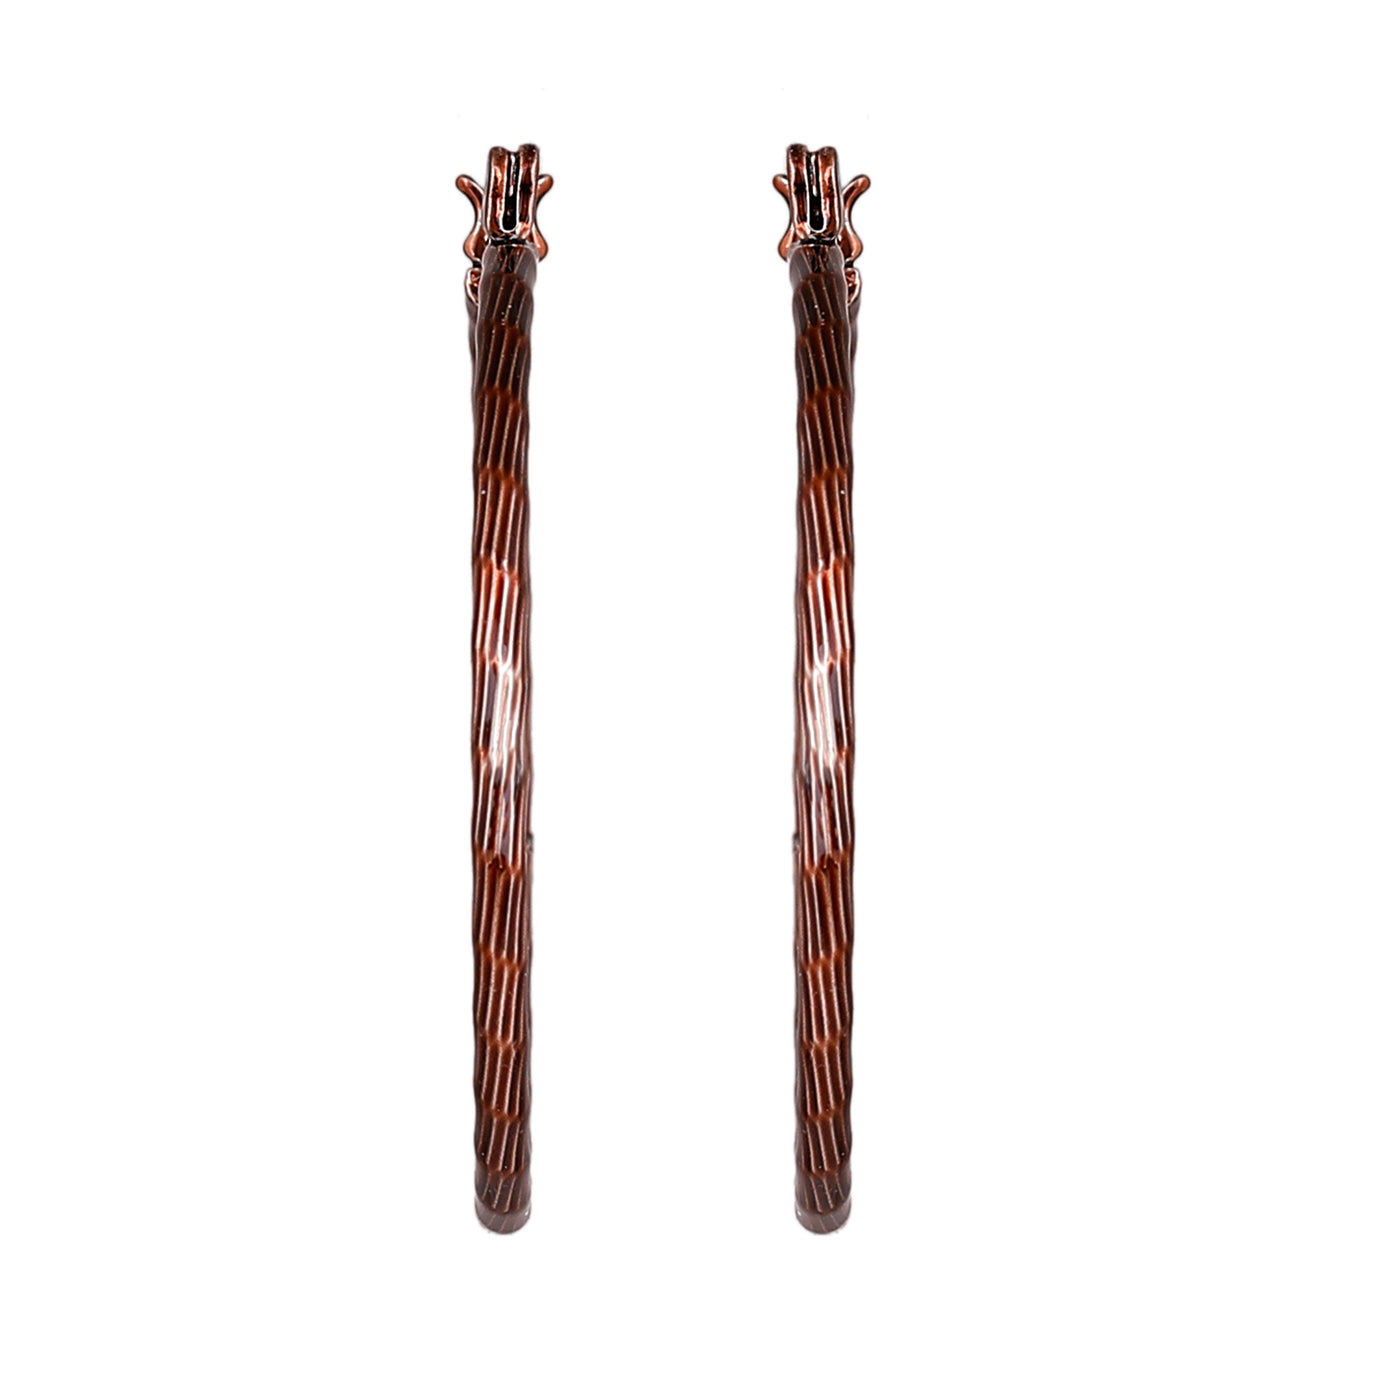 Estele Chocolate Brown Plated Alluring Circular Hoop Earrings for Women